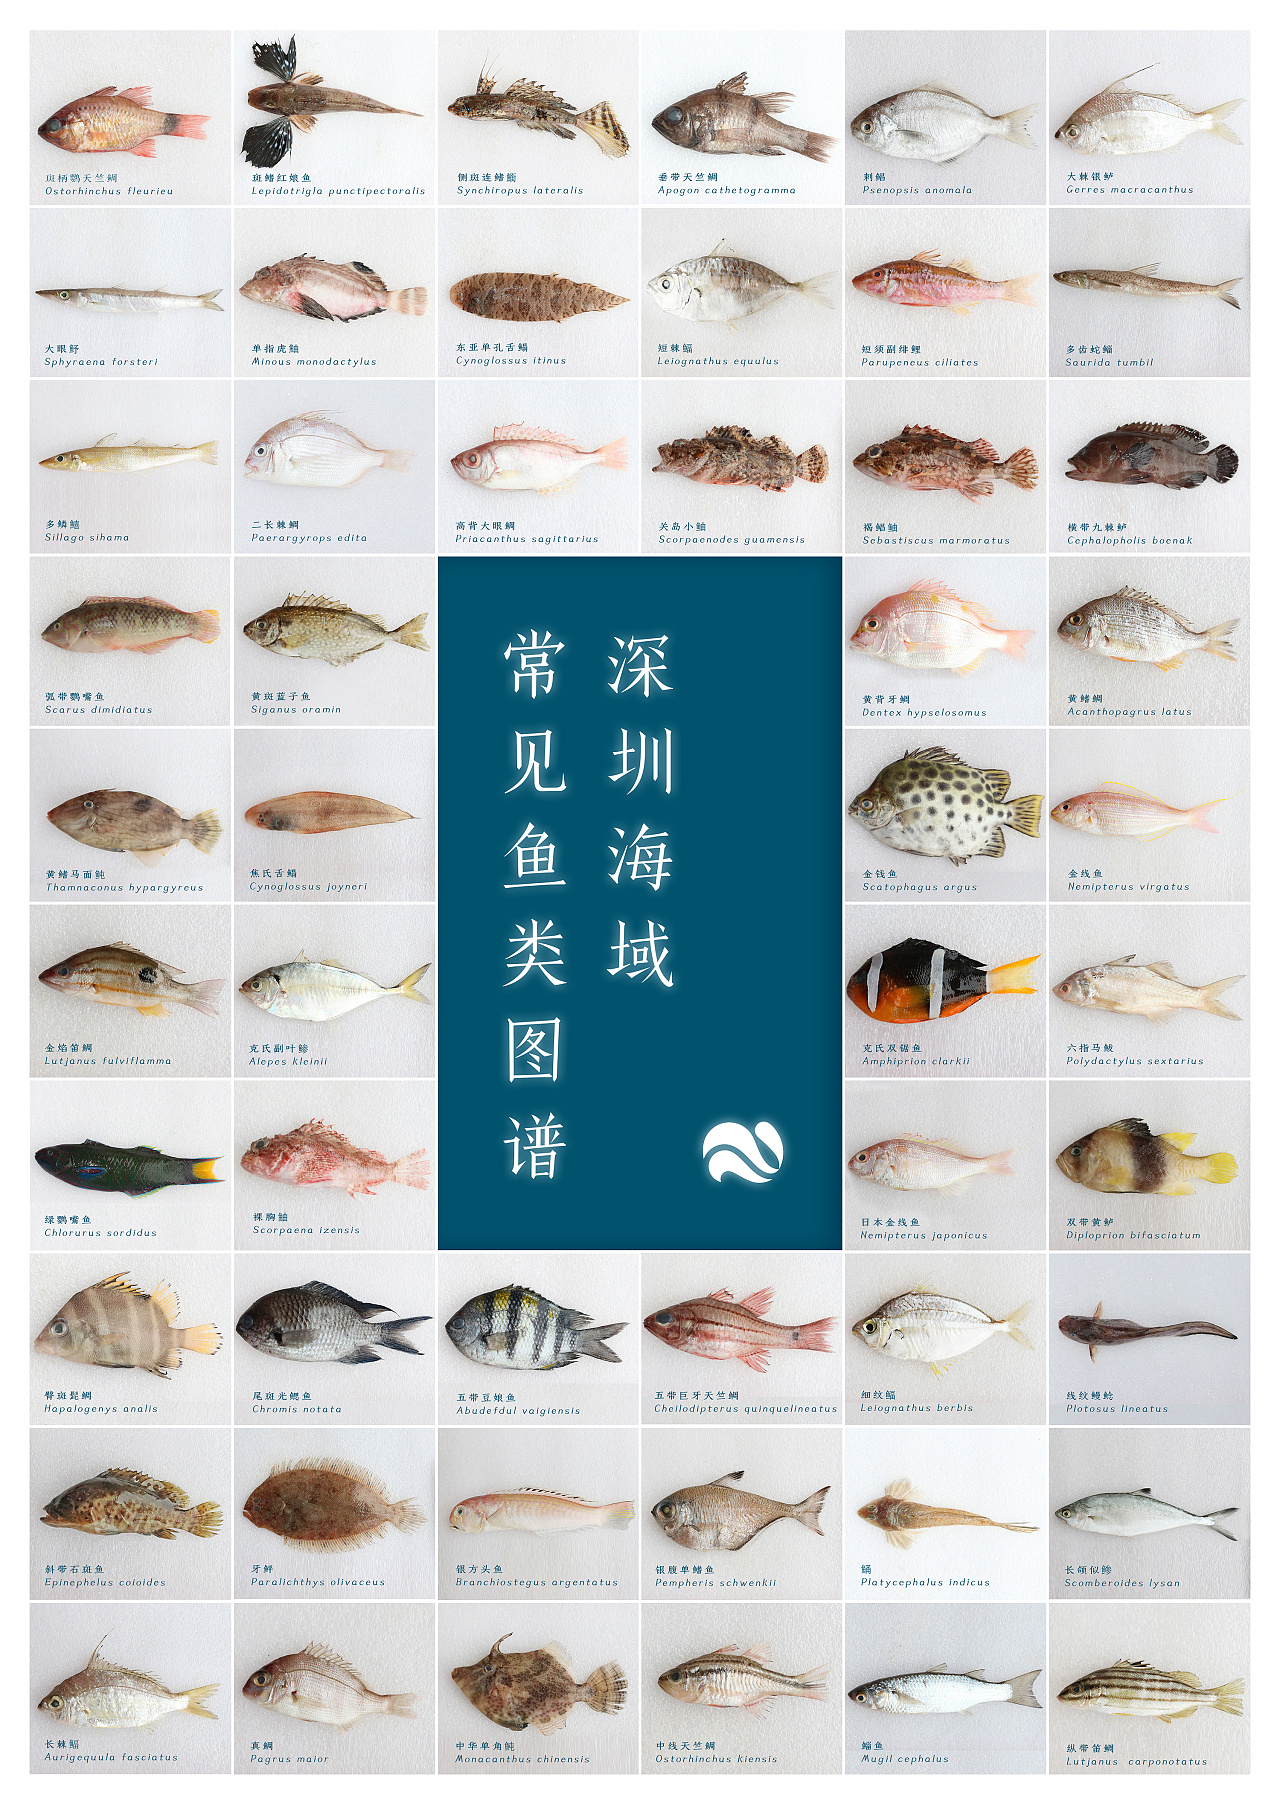 常见海鱼图鉴,150种海鱼的图片和名字 - 伤感说说吧